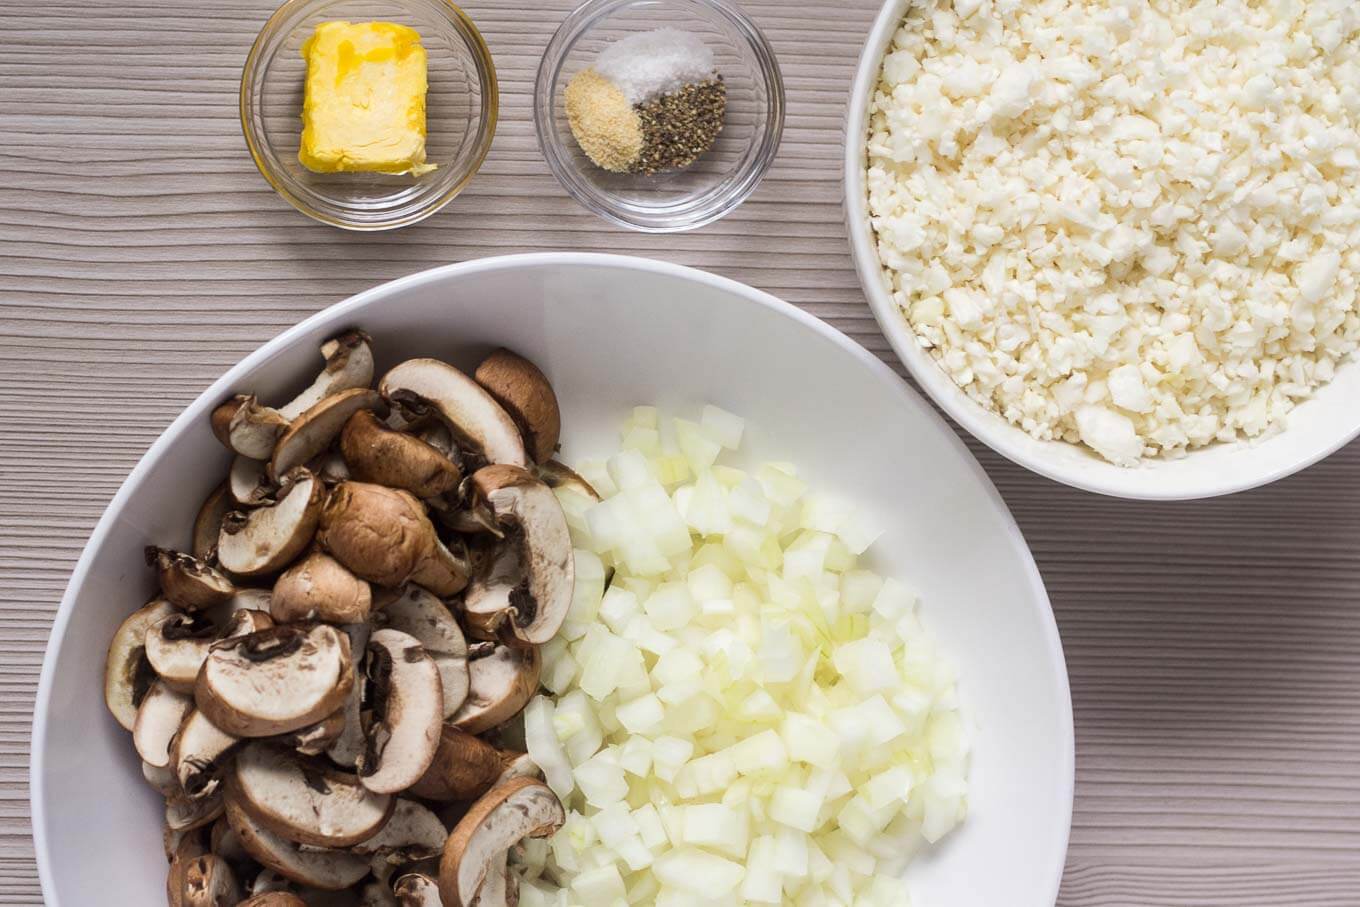 Ingredientes: couve-flor crua, cogumelos fatiados, cebola, manteiga, alho em pó, sal, pimenta